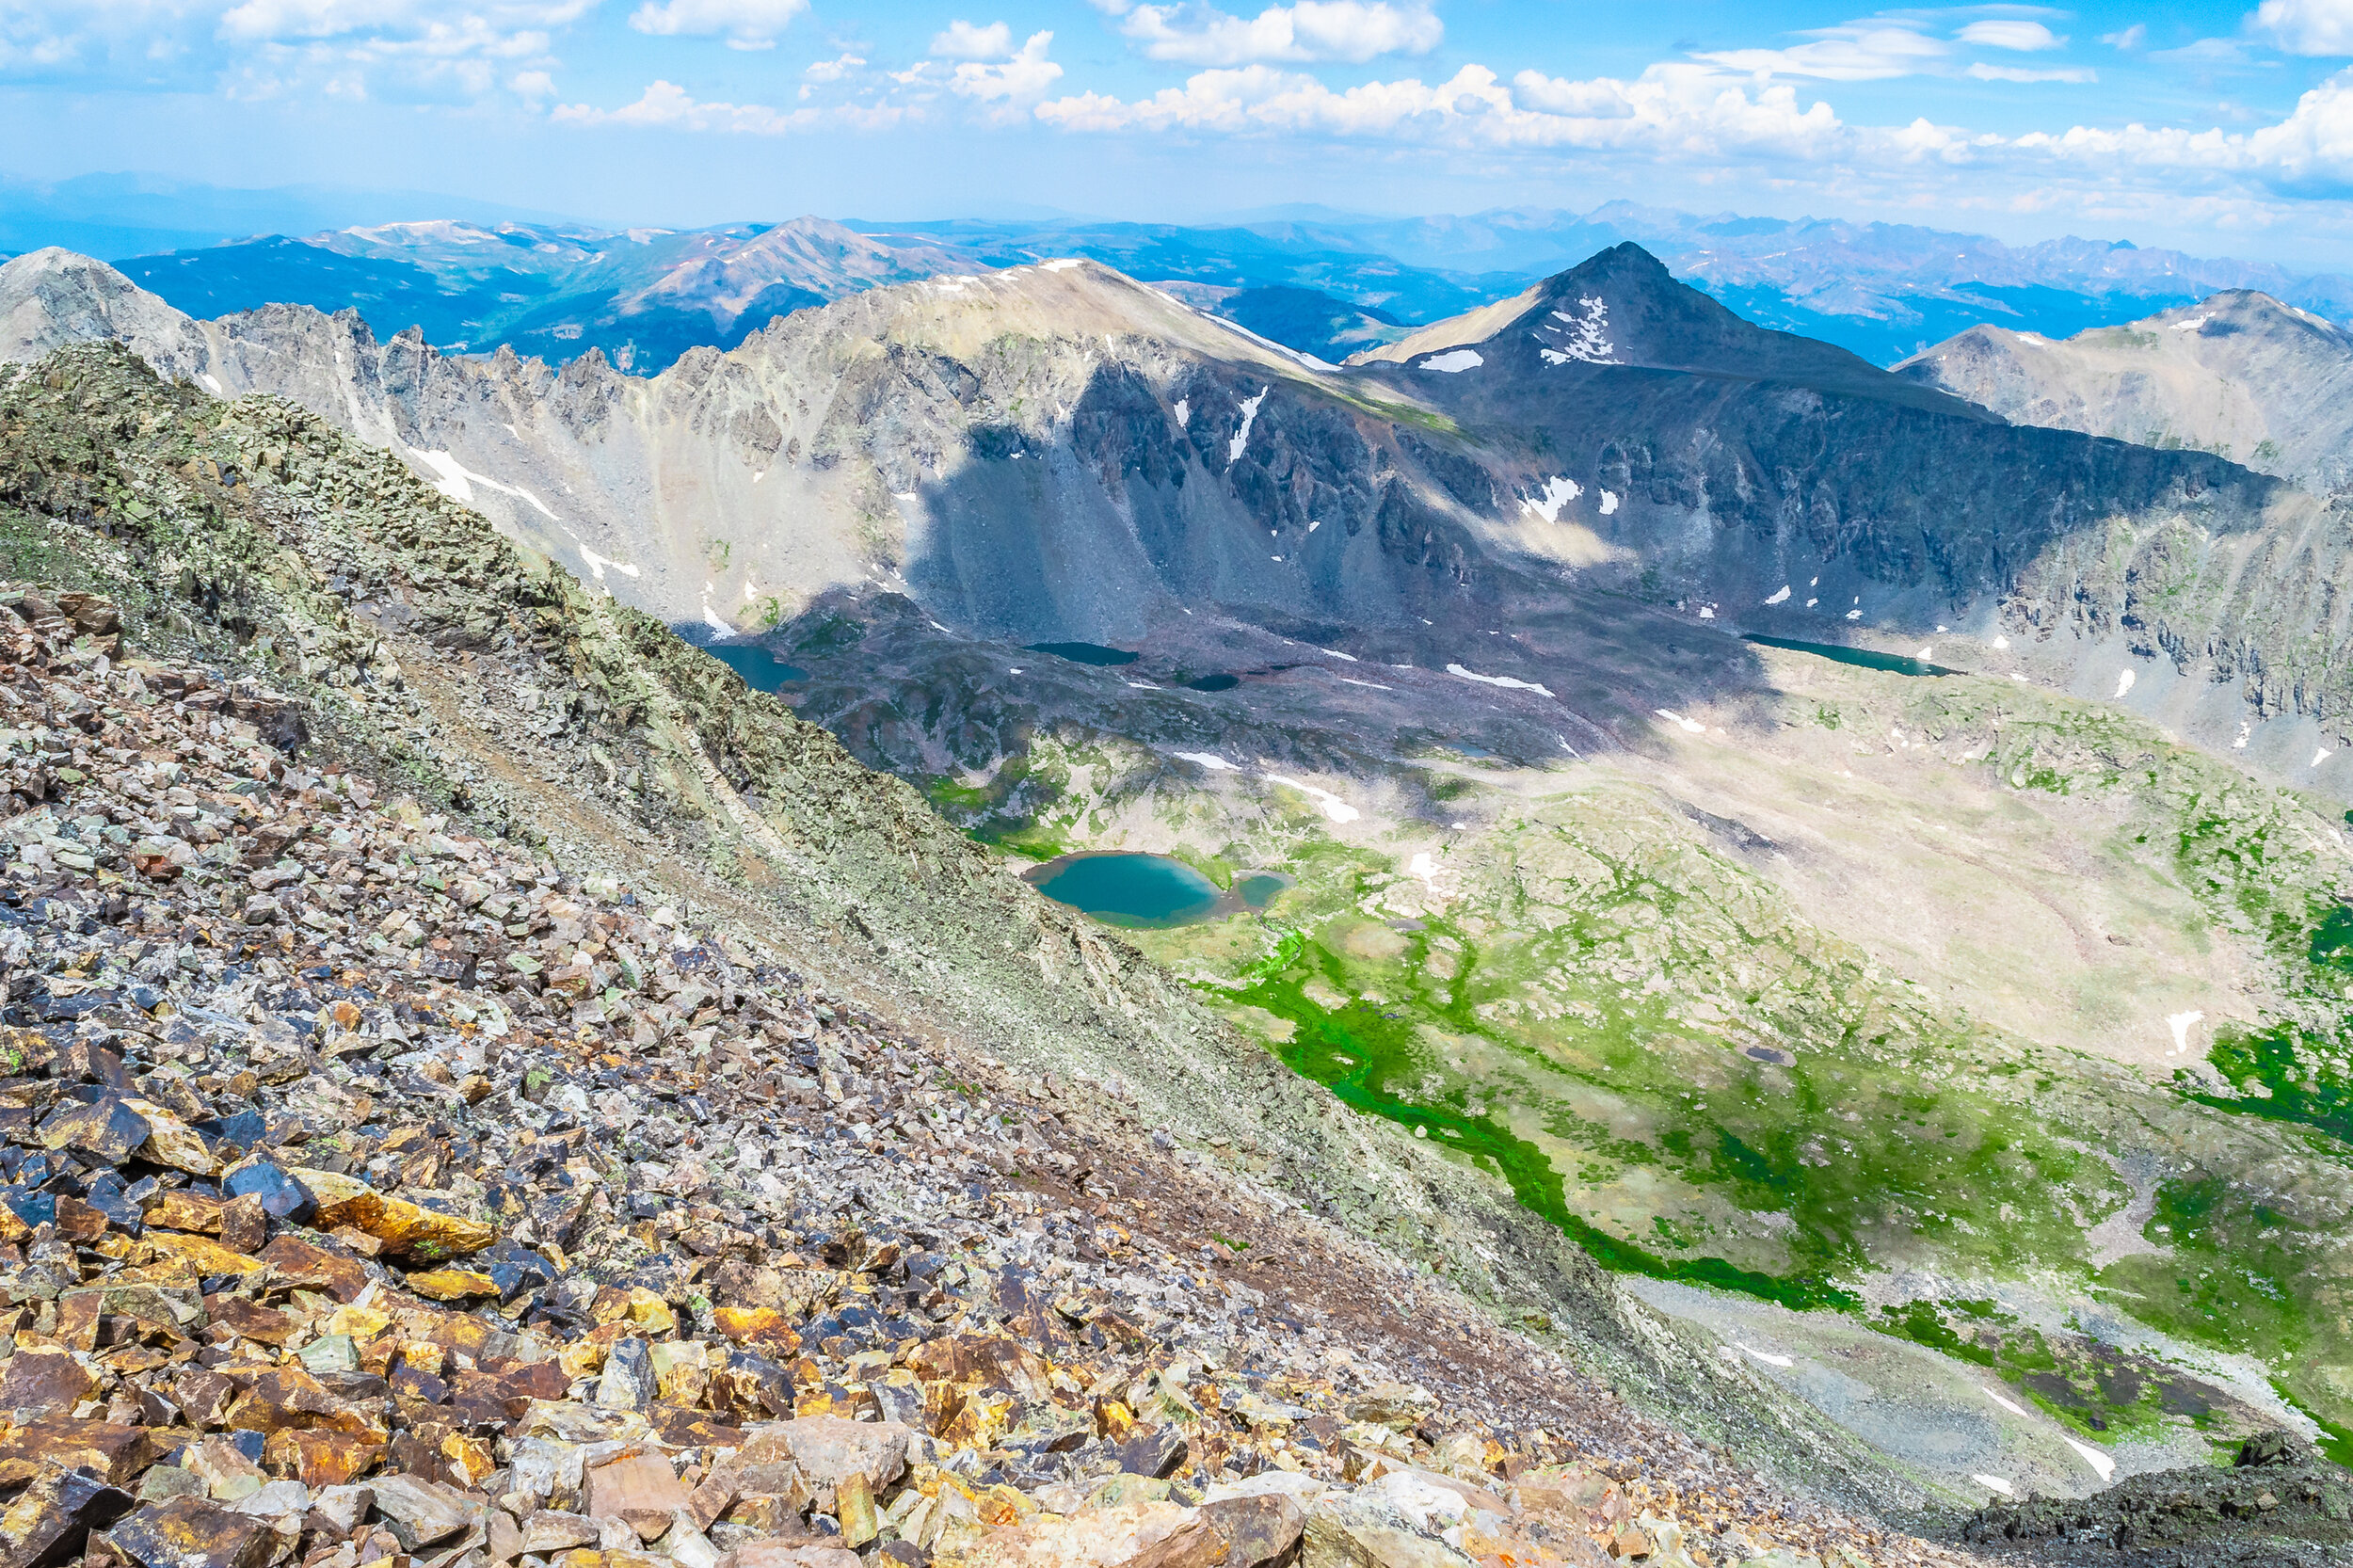 Climbing a Colorado 14er: The Quandary Peak Trail